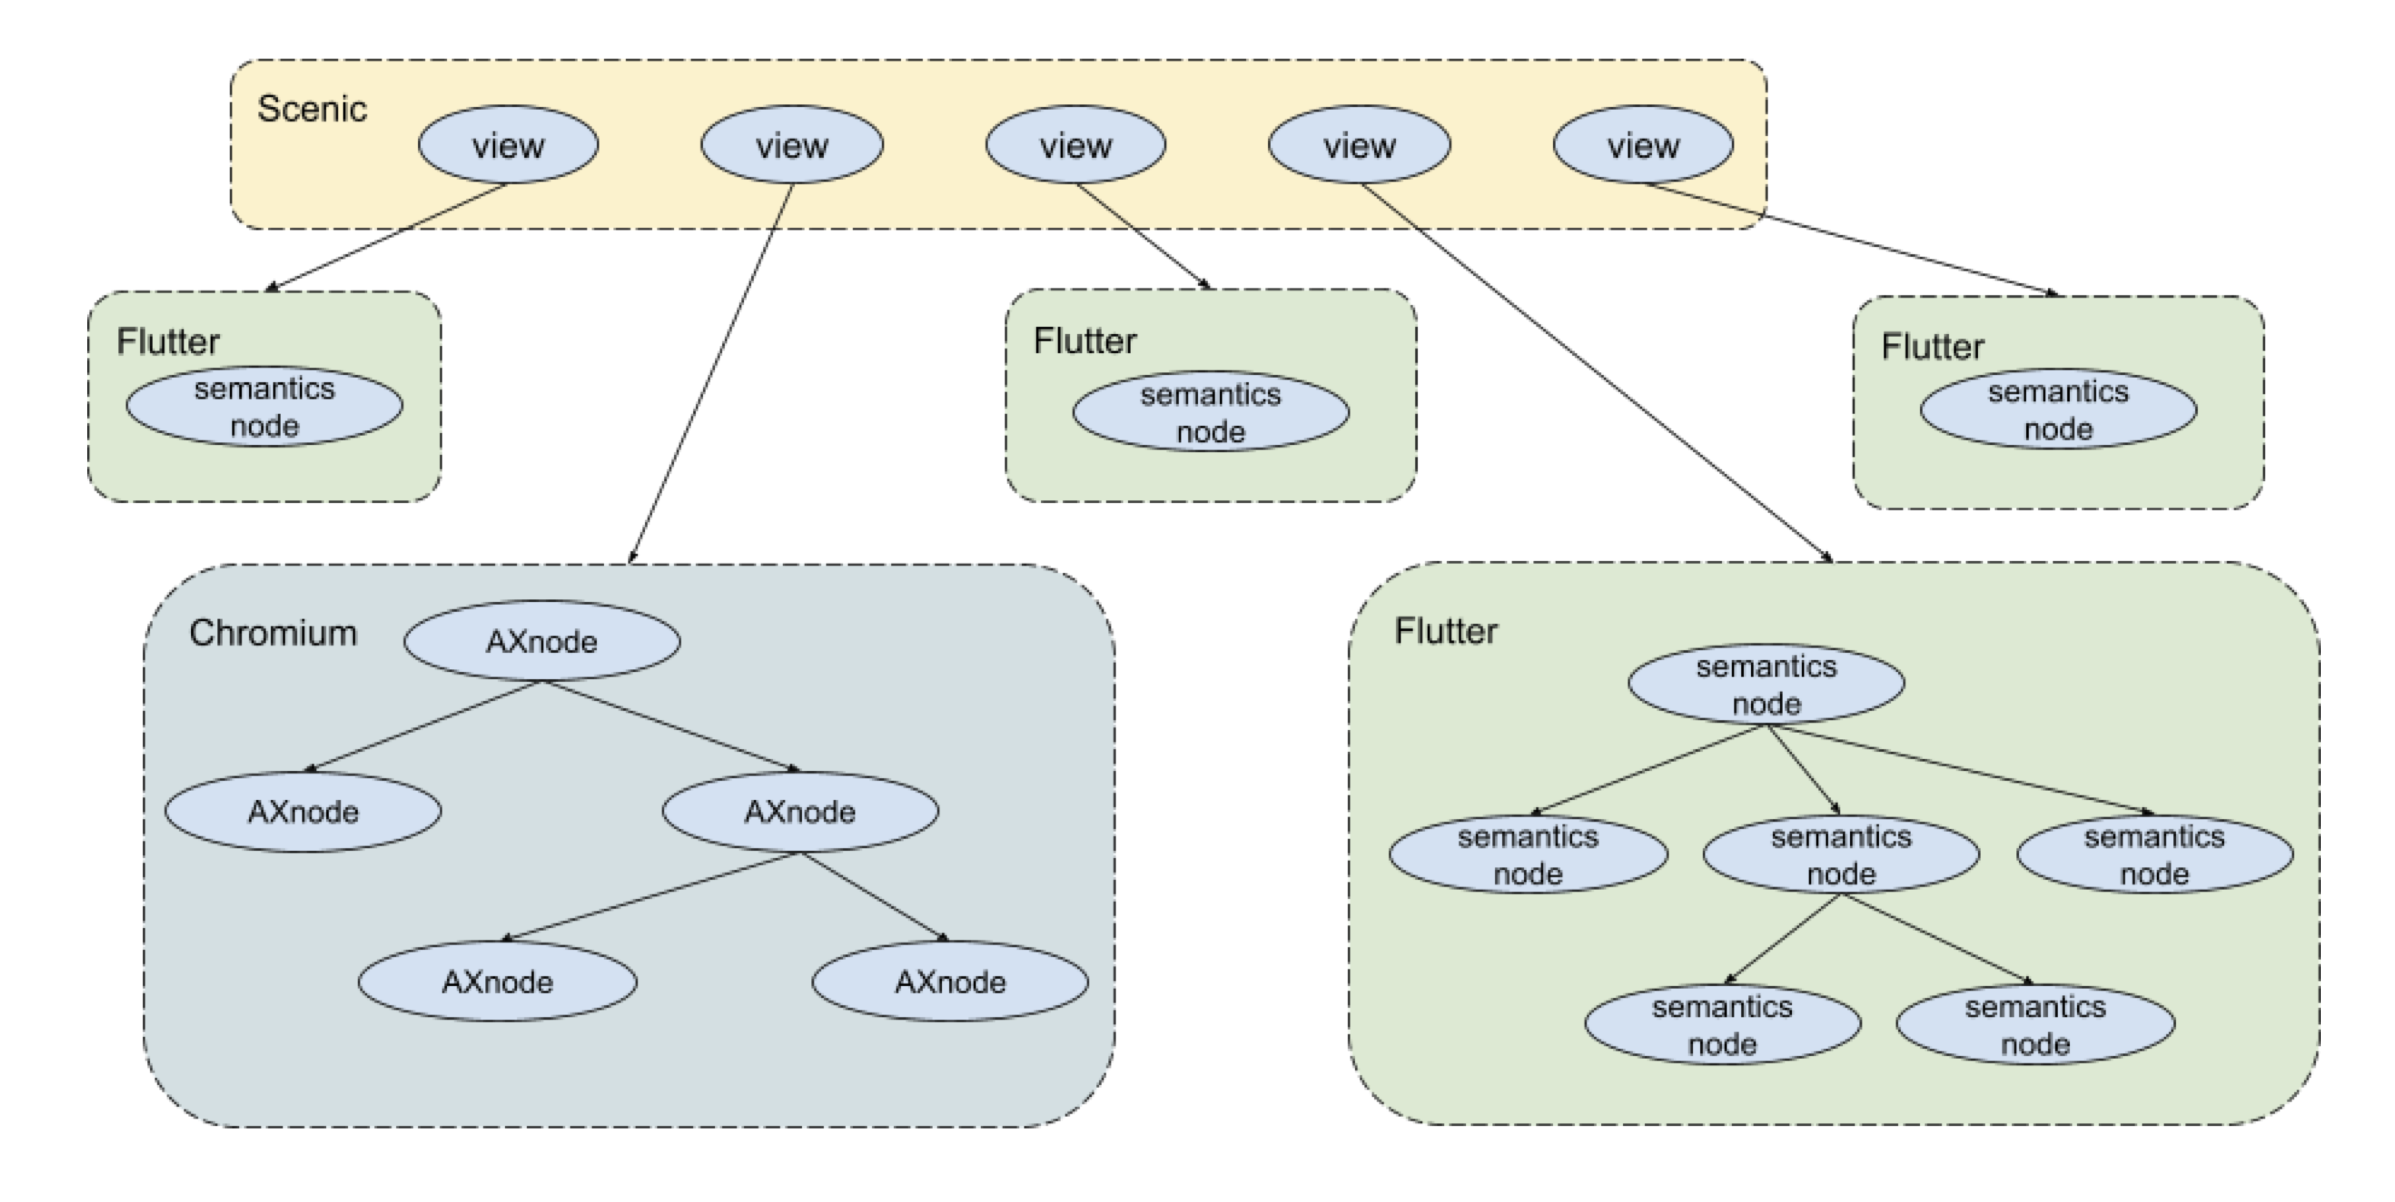 此图仅从景观的角度展示了 Fuchsia 界面的层次结构。顶部是“Scene”文件夹的许多景观。每个视图都与一个用于显示某些界面的运行时相关联，包括 Flutter 运行时和 Chromium 运行时。每个 Flutter 和 Chromium 运行时均在自身内部维护了一个将提供给无障碍功能管理器的语义层次结构。